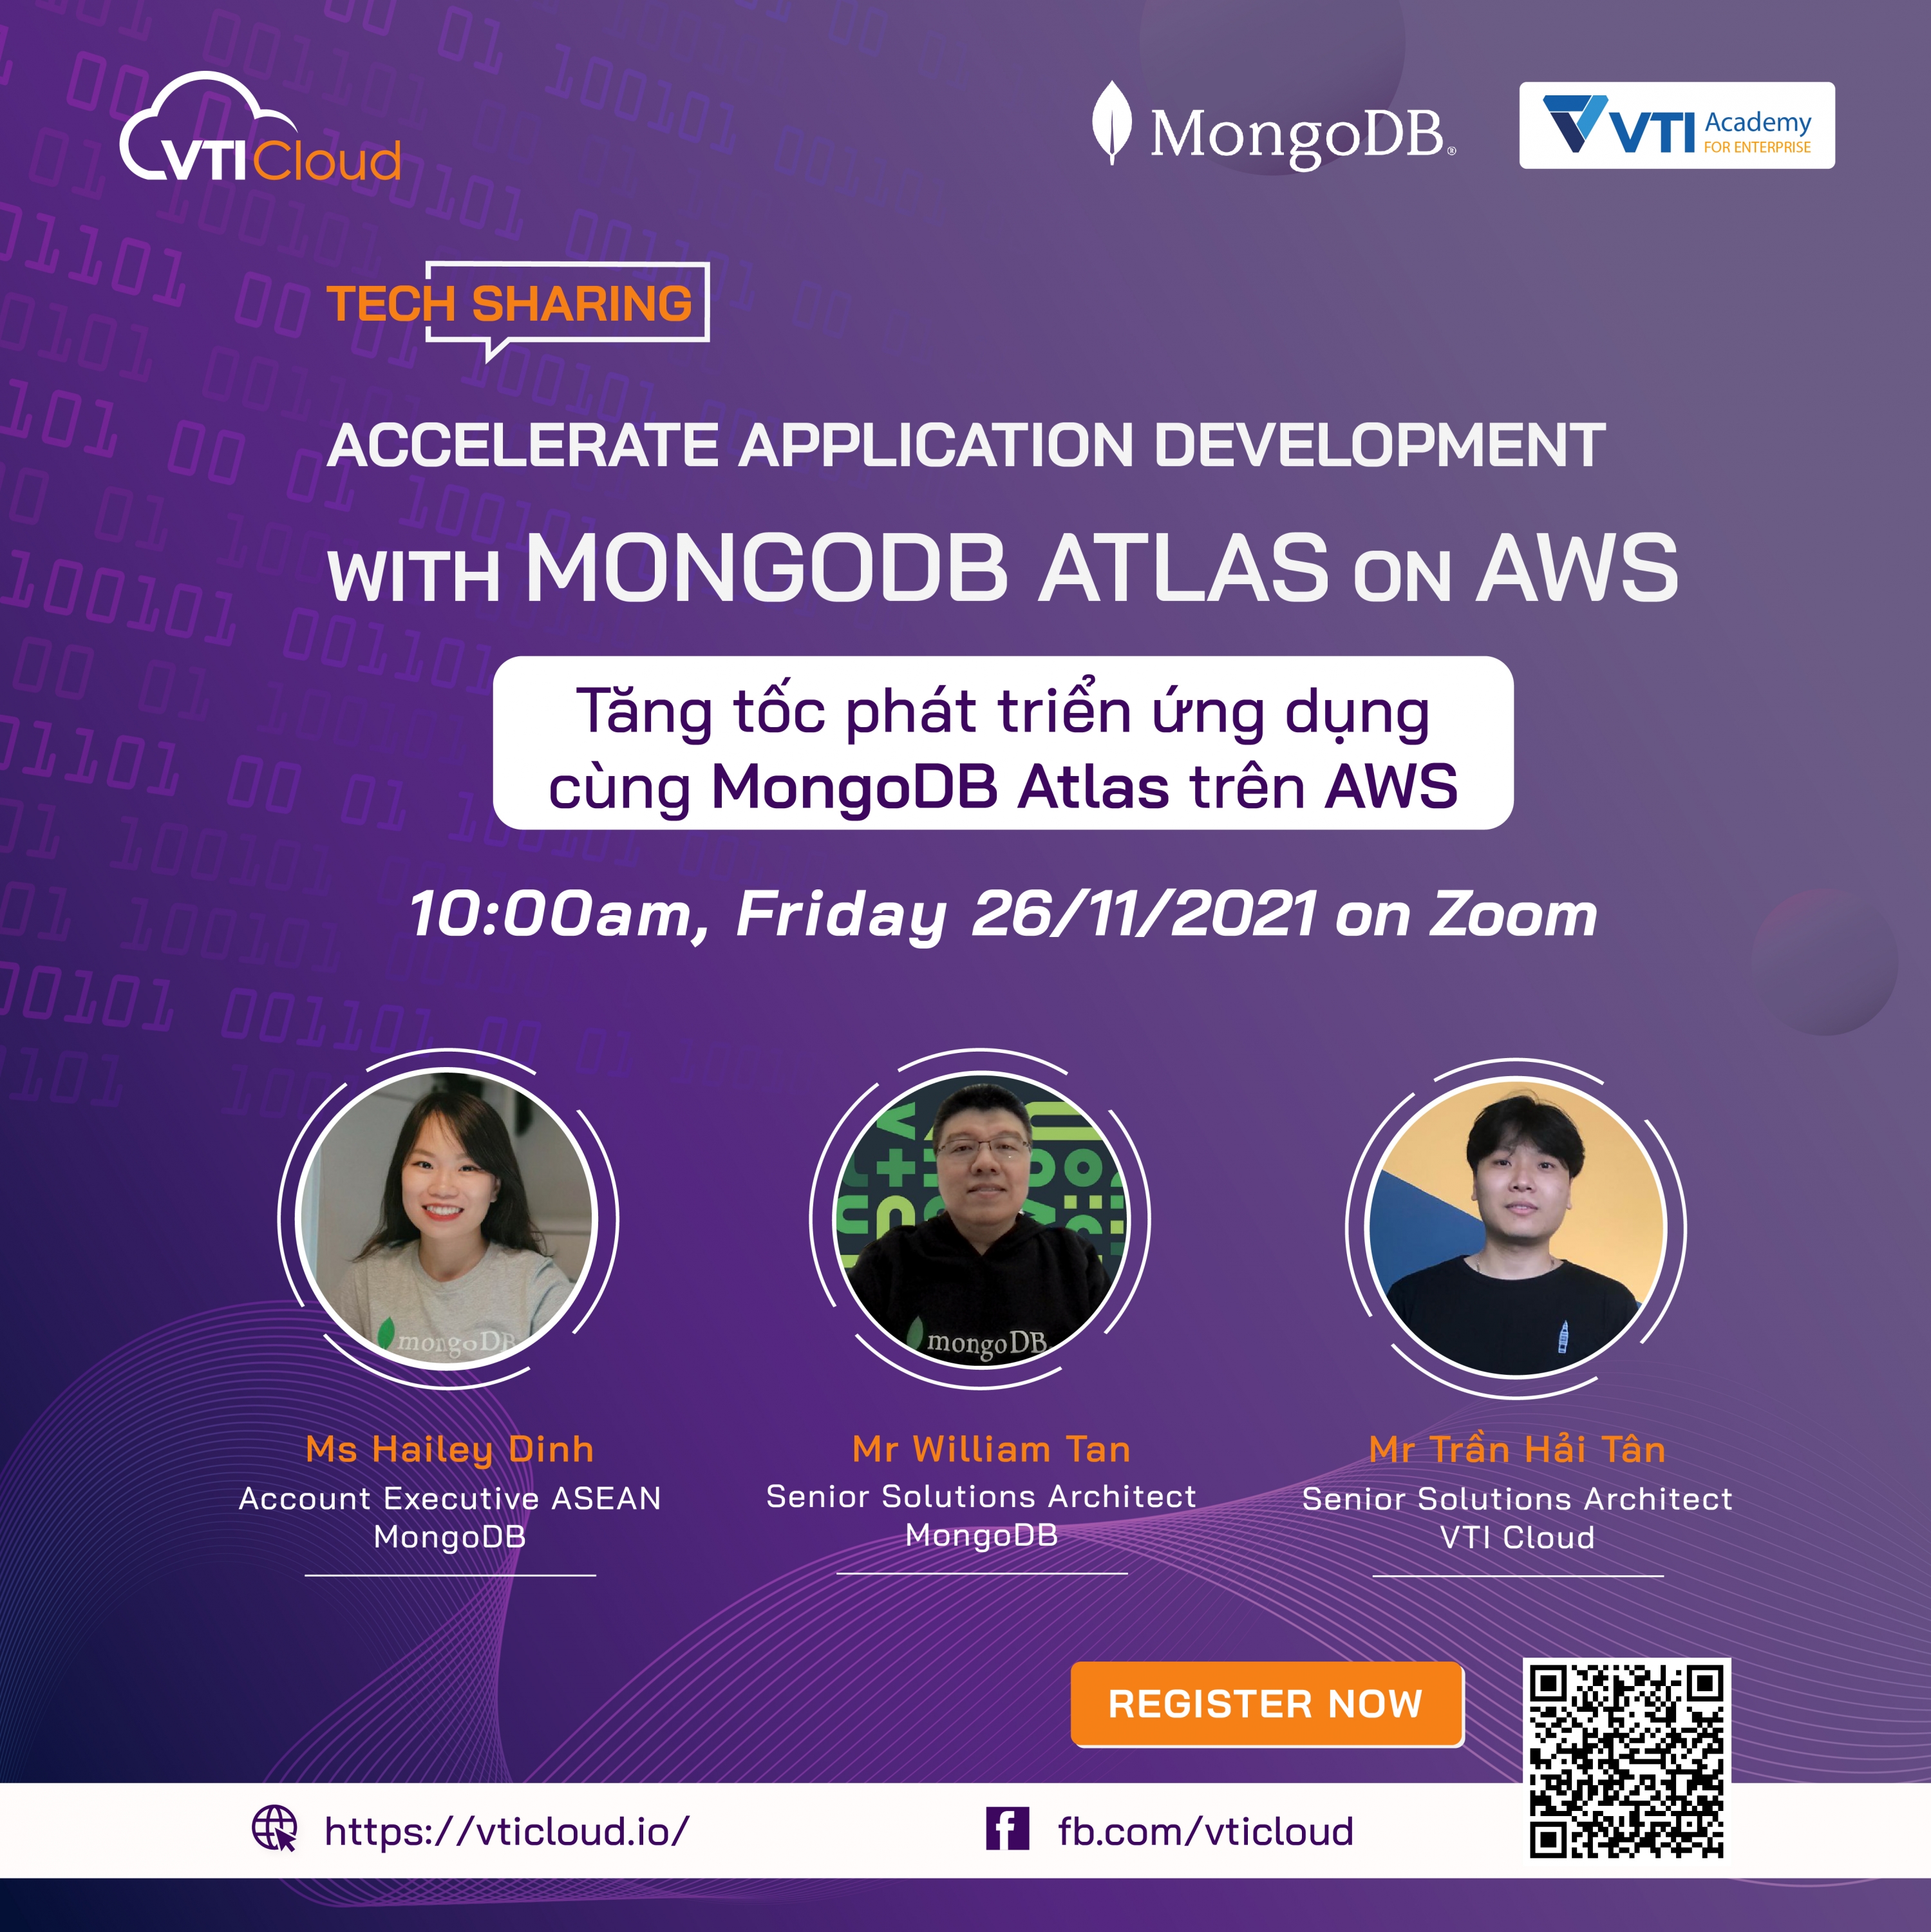 Tech Sharing: Accelerate Application Development with MongoDB on AWS - Tăng tốc phát triển ứng dụng cùng MongoDB Atlas trên AWS